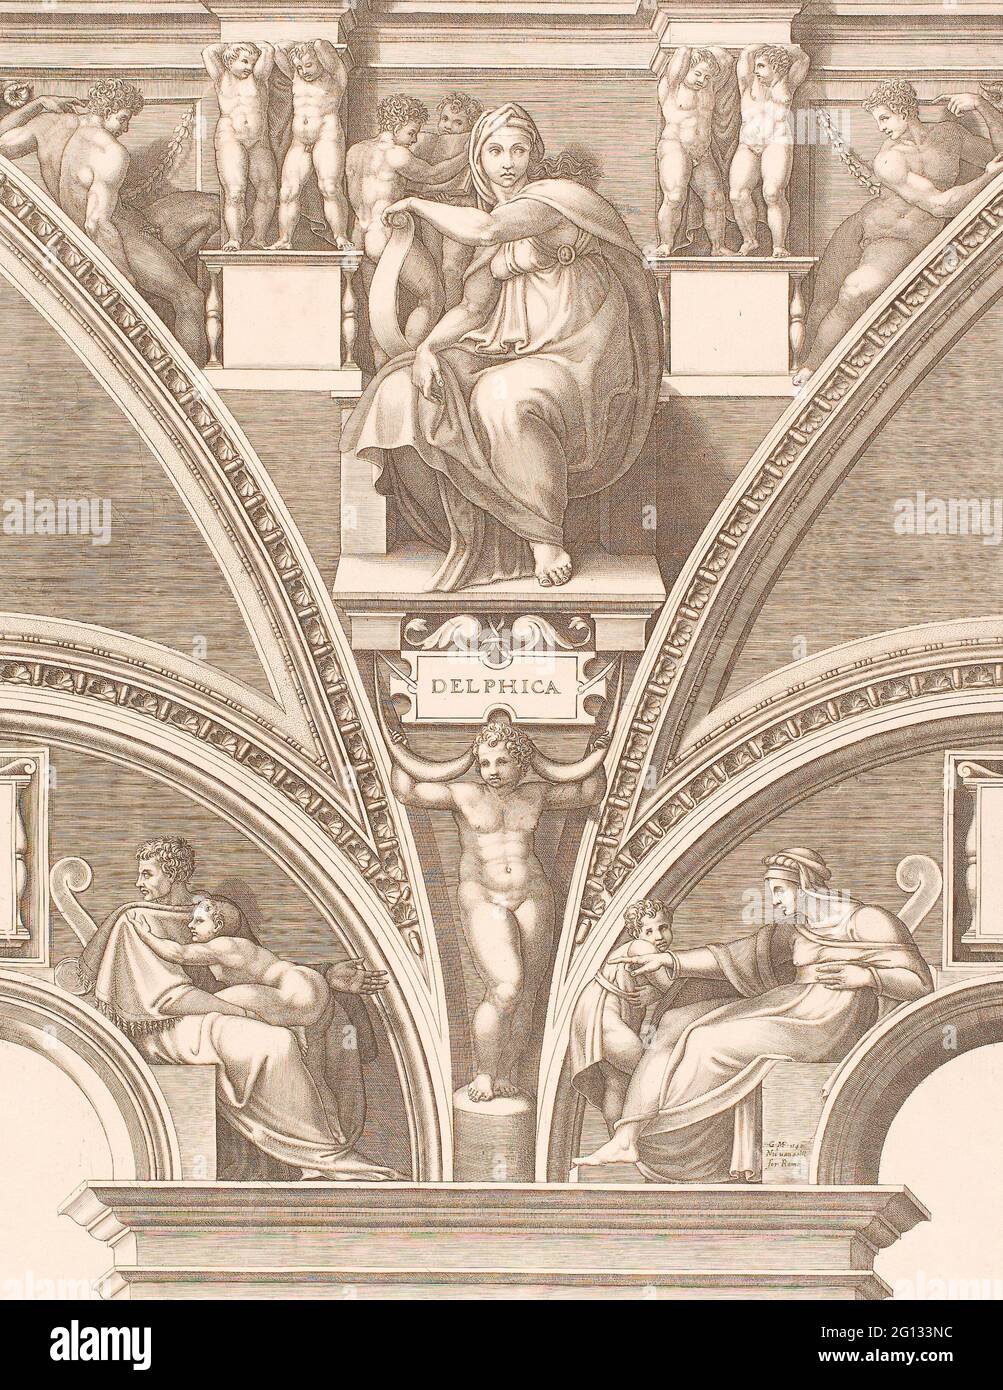 Giorgio Ghisi. El Sibyl Delfico - principios de 1570s - Giorgio Ghisi (italiano, 1520-1582) después de Miguel Ángel (italiano, 1475-1564). Grabado en negro Foto de stock